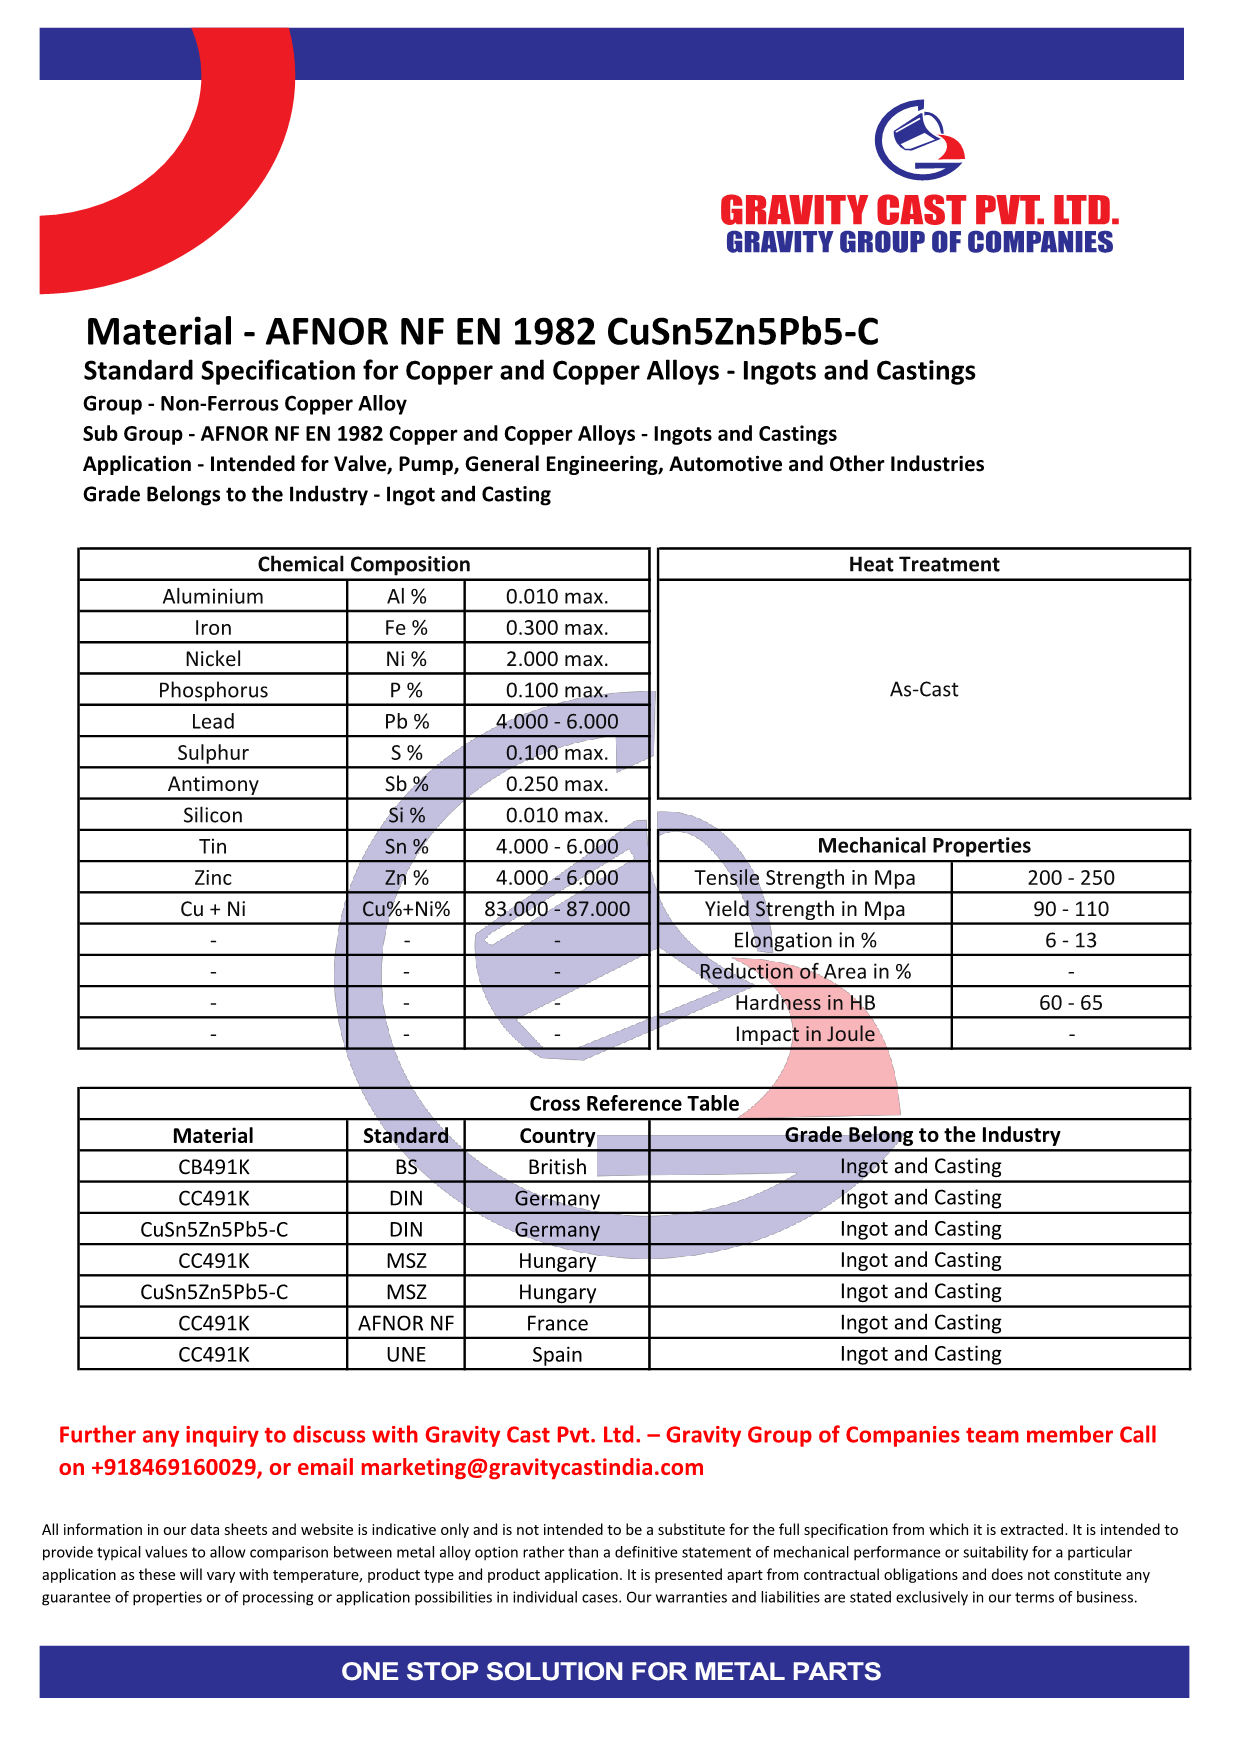 AFNOR NF EN 1982 CuSn5Zn5Pb5-C.pdf